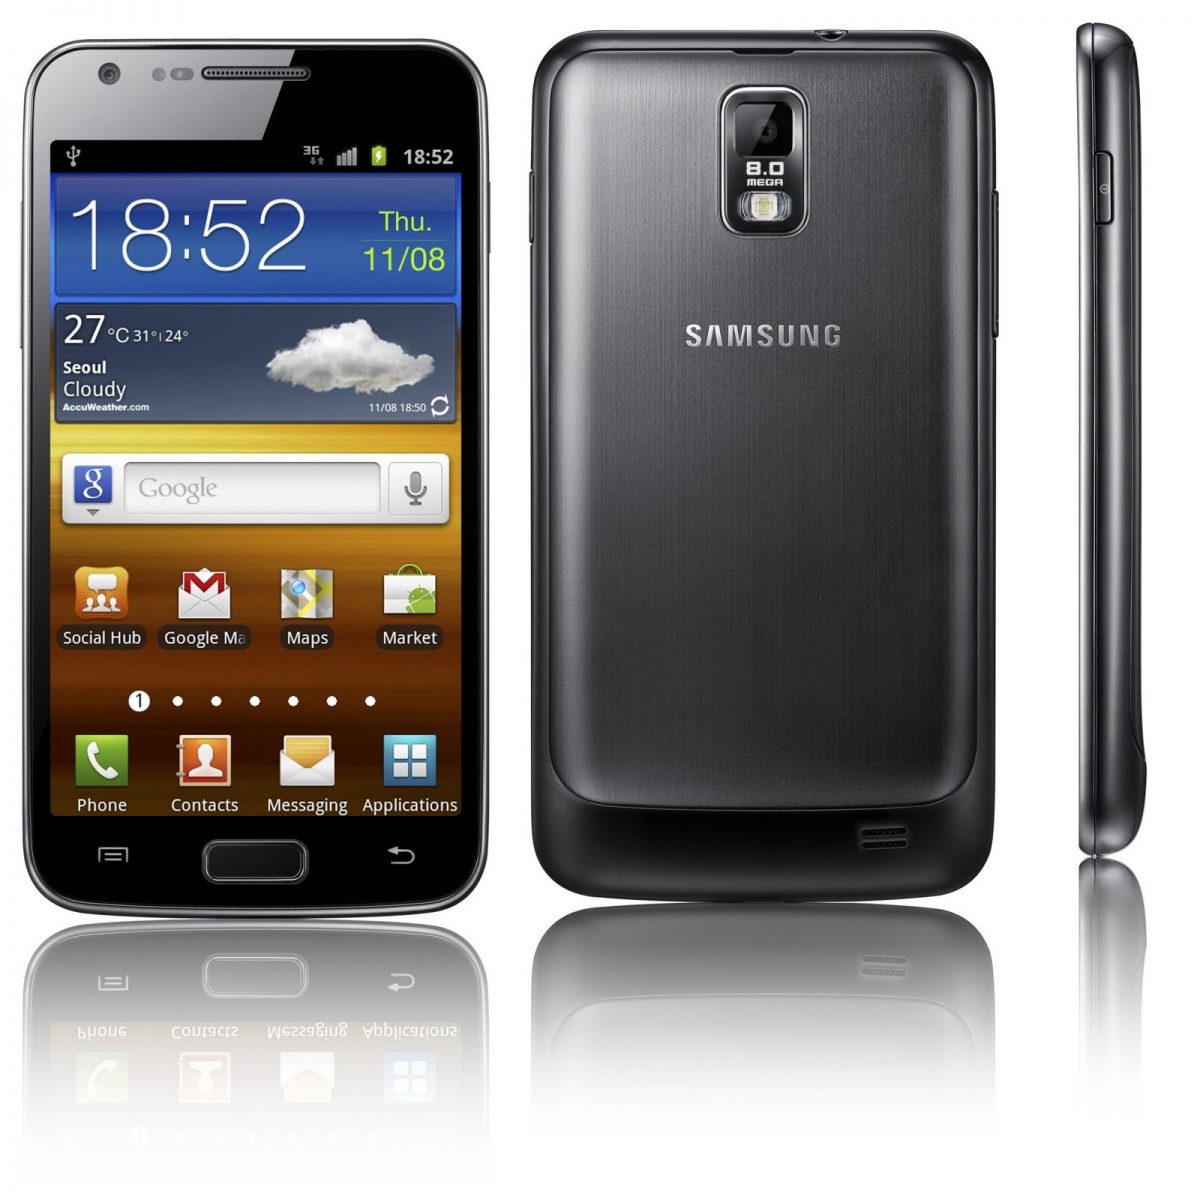 Samsung Galaxy s2 2011